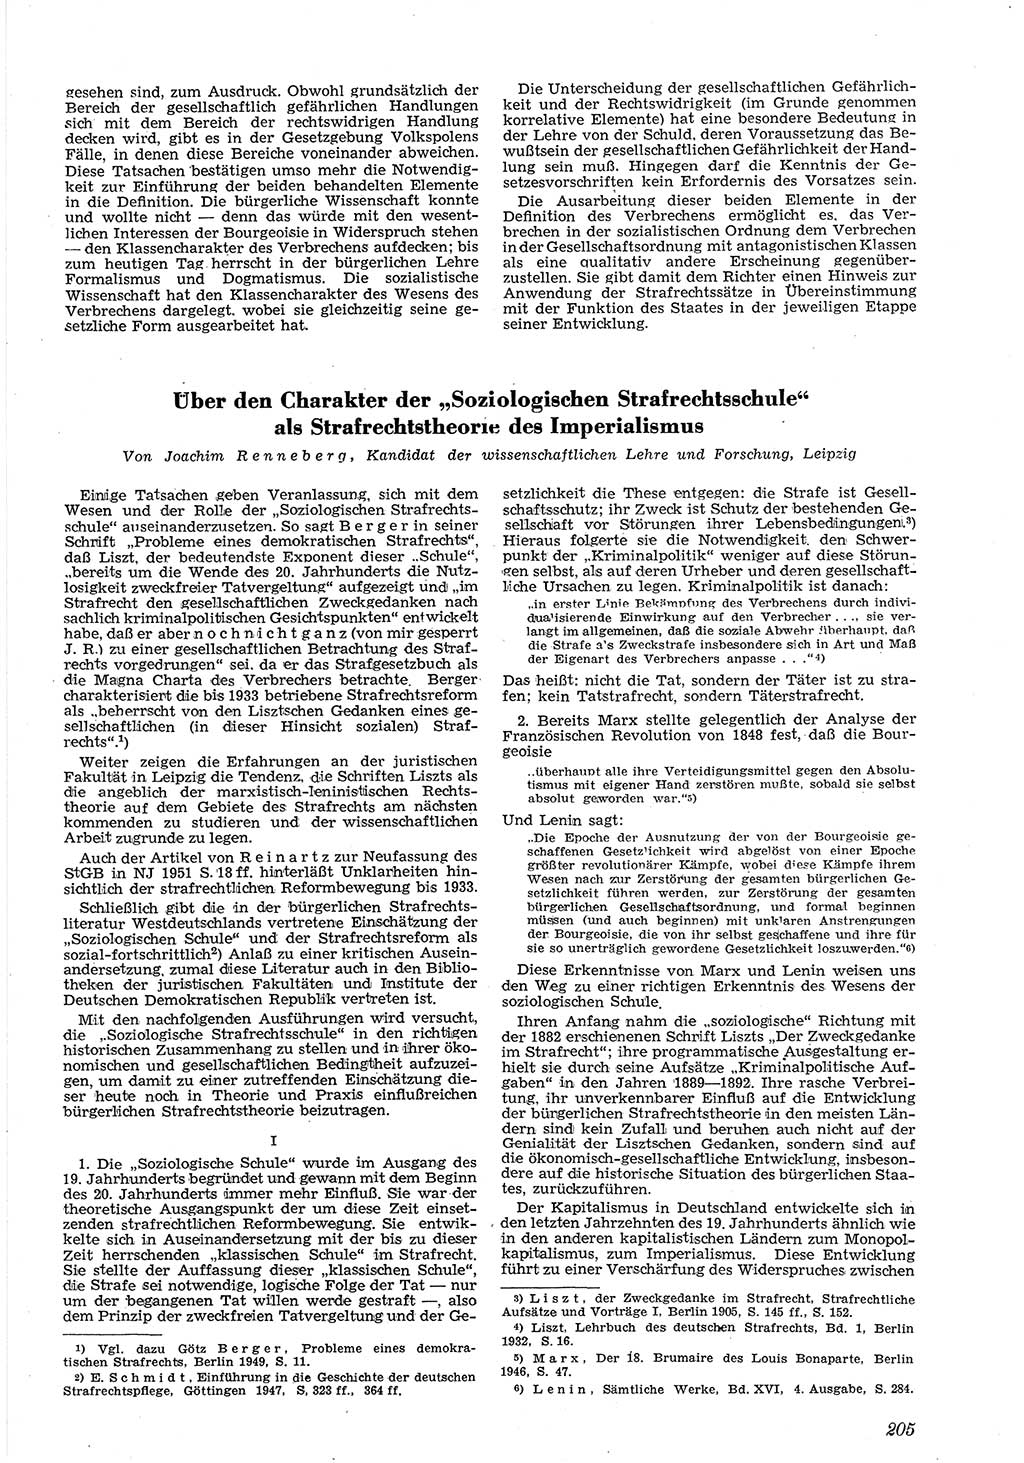 Neue Justiz (NJ), Zeitschrift für Recht und Rechtswissenschaft [Deutsche Demokratische Republik (DDR)], 5. Jahrgang 1951, Seite 205 (NJ DDR 1951, S. 205)